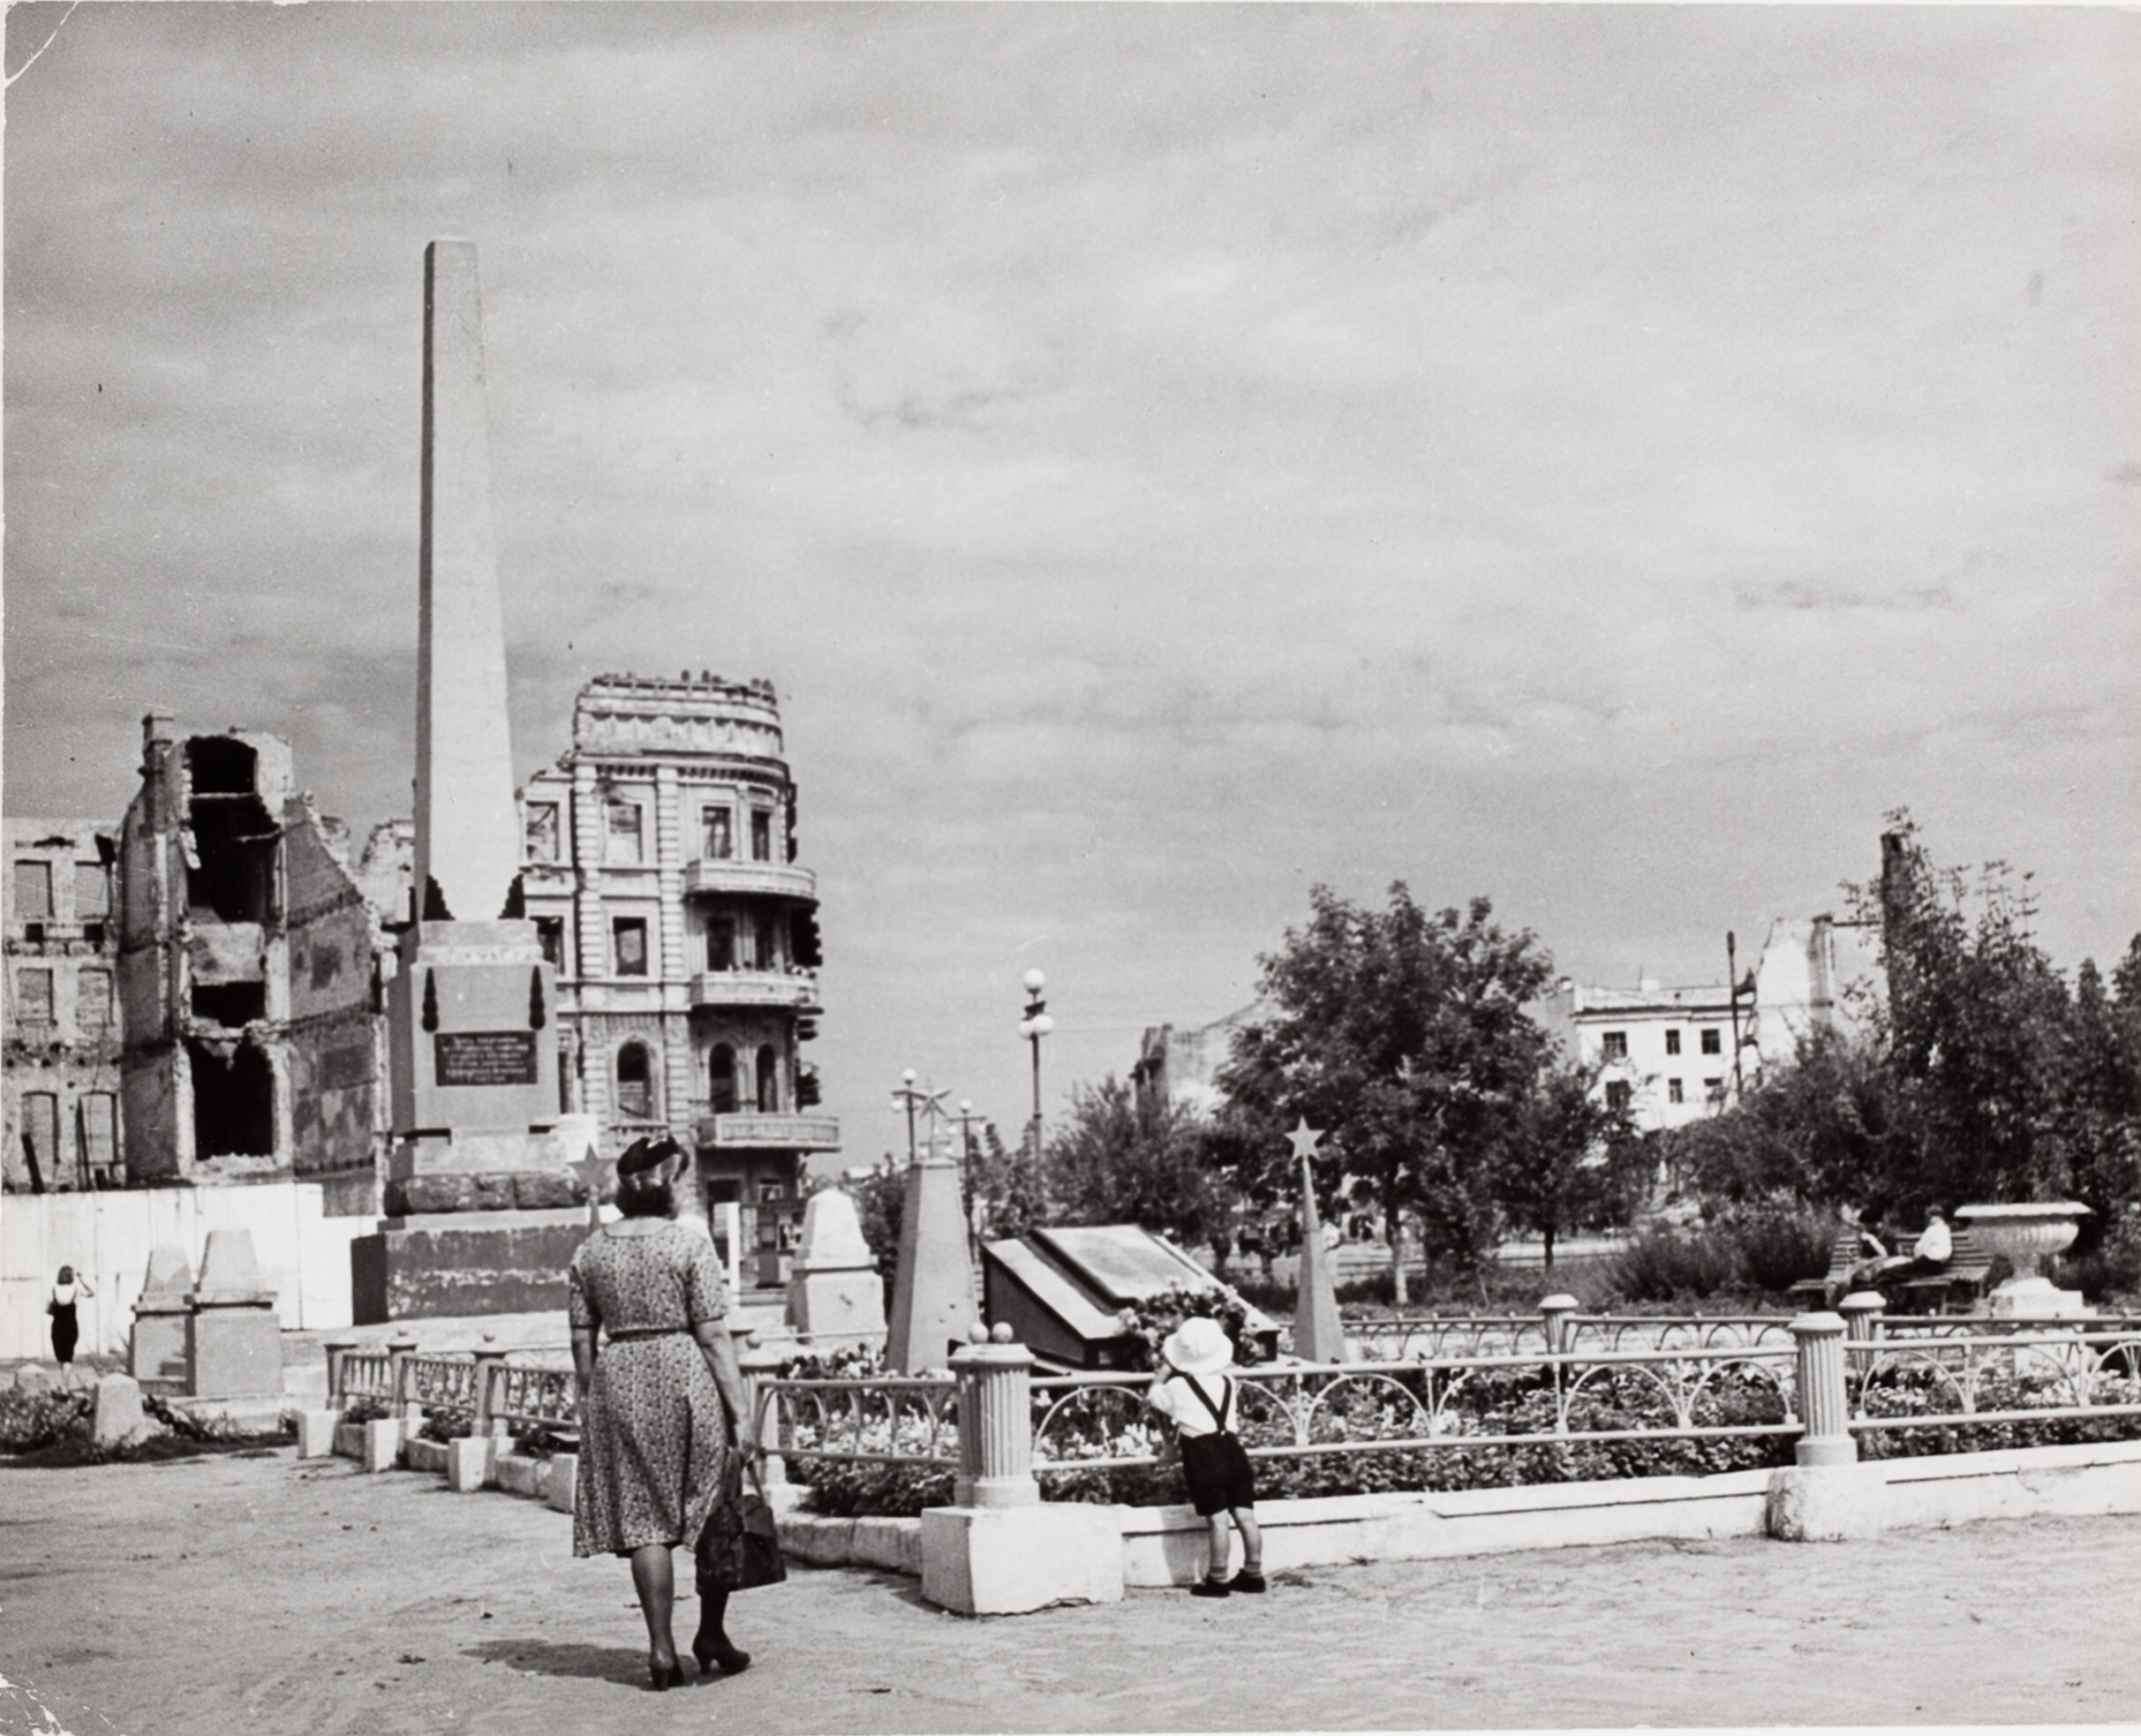 Перед руинами и памятником, Сталинград, СССР, 1947 год. Фотограф Роберт Капа